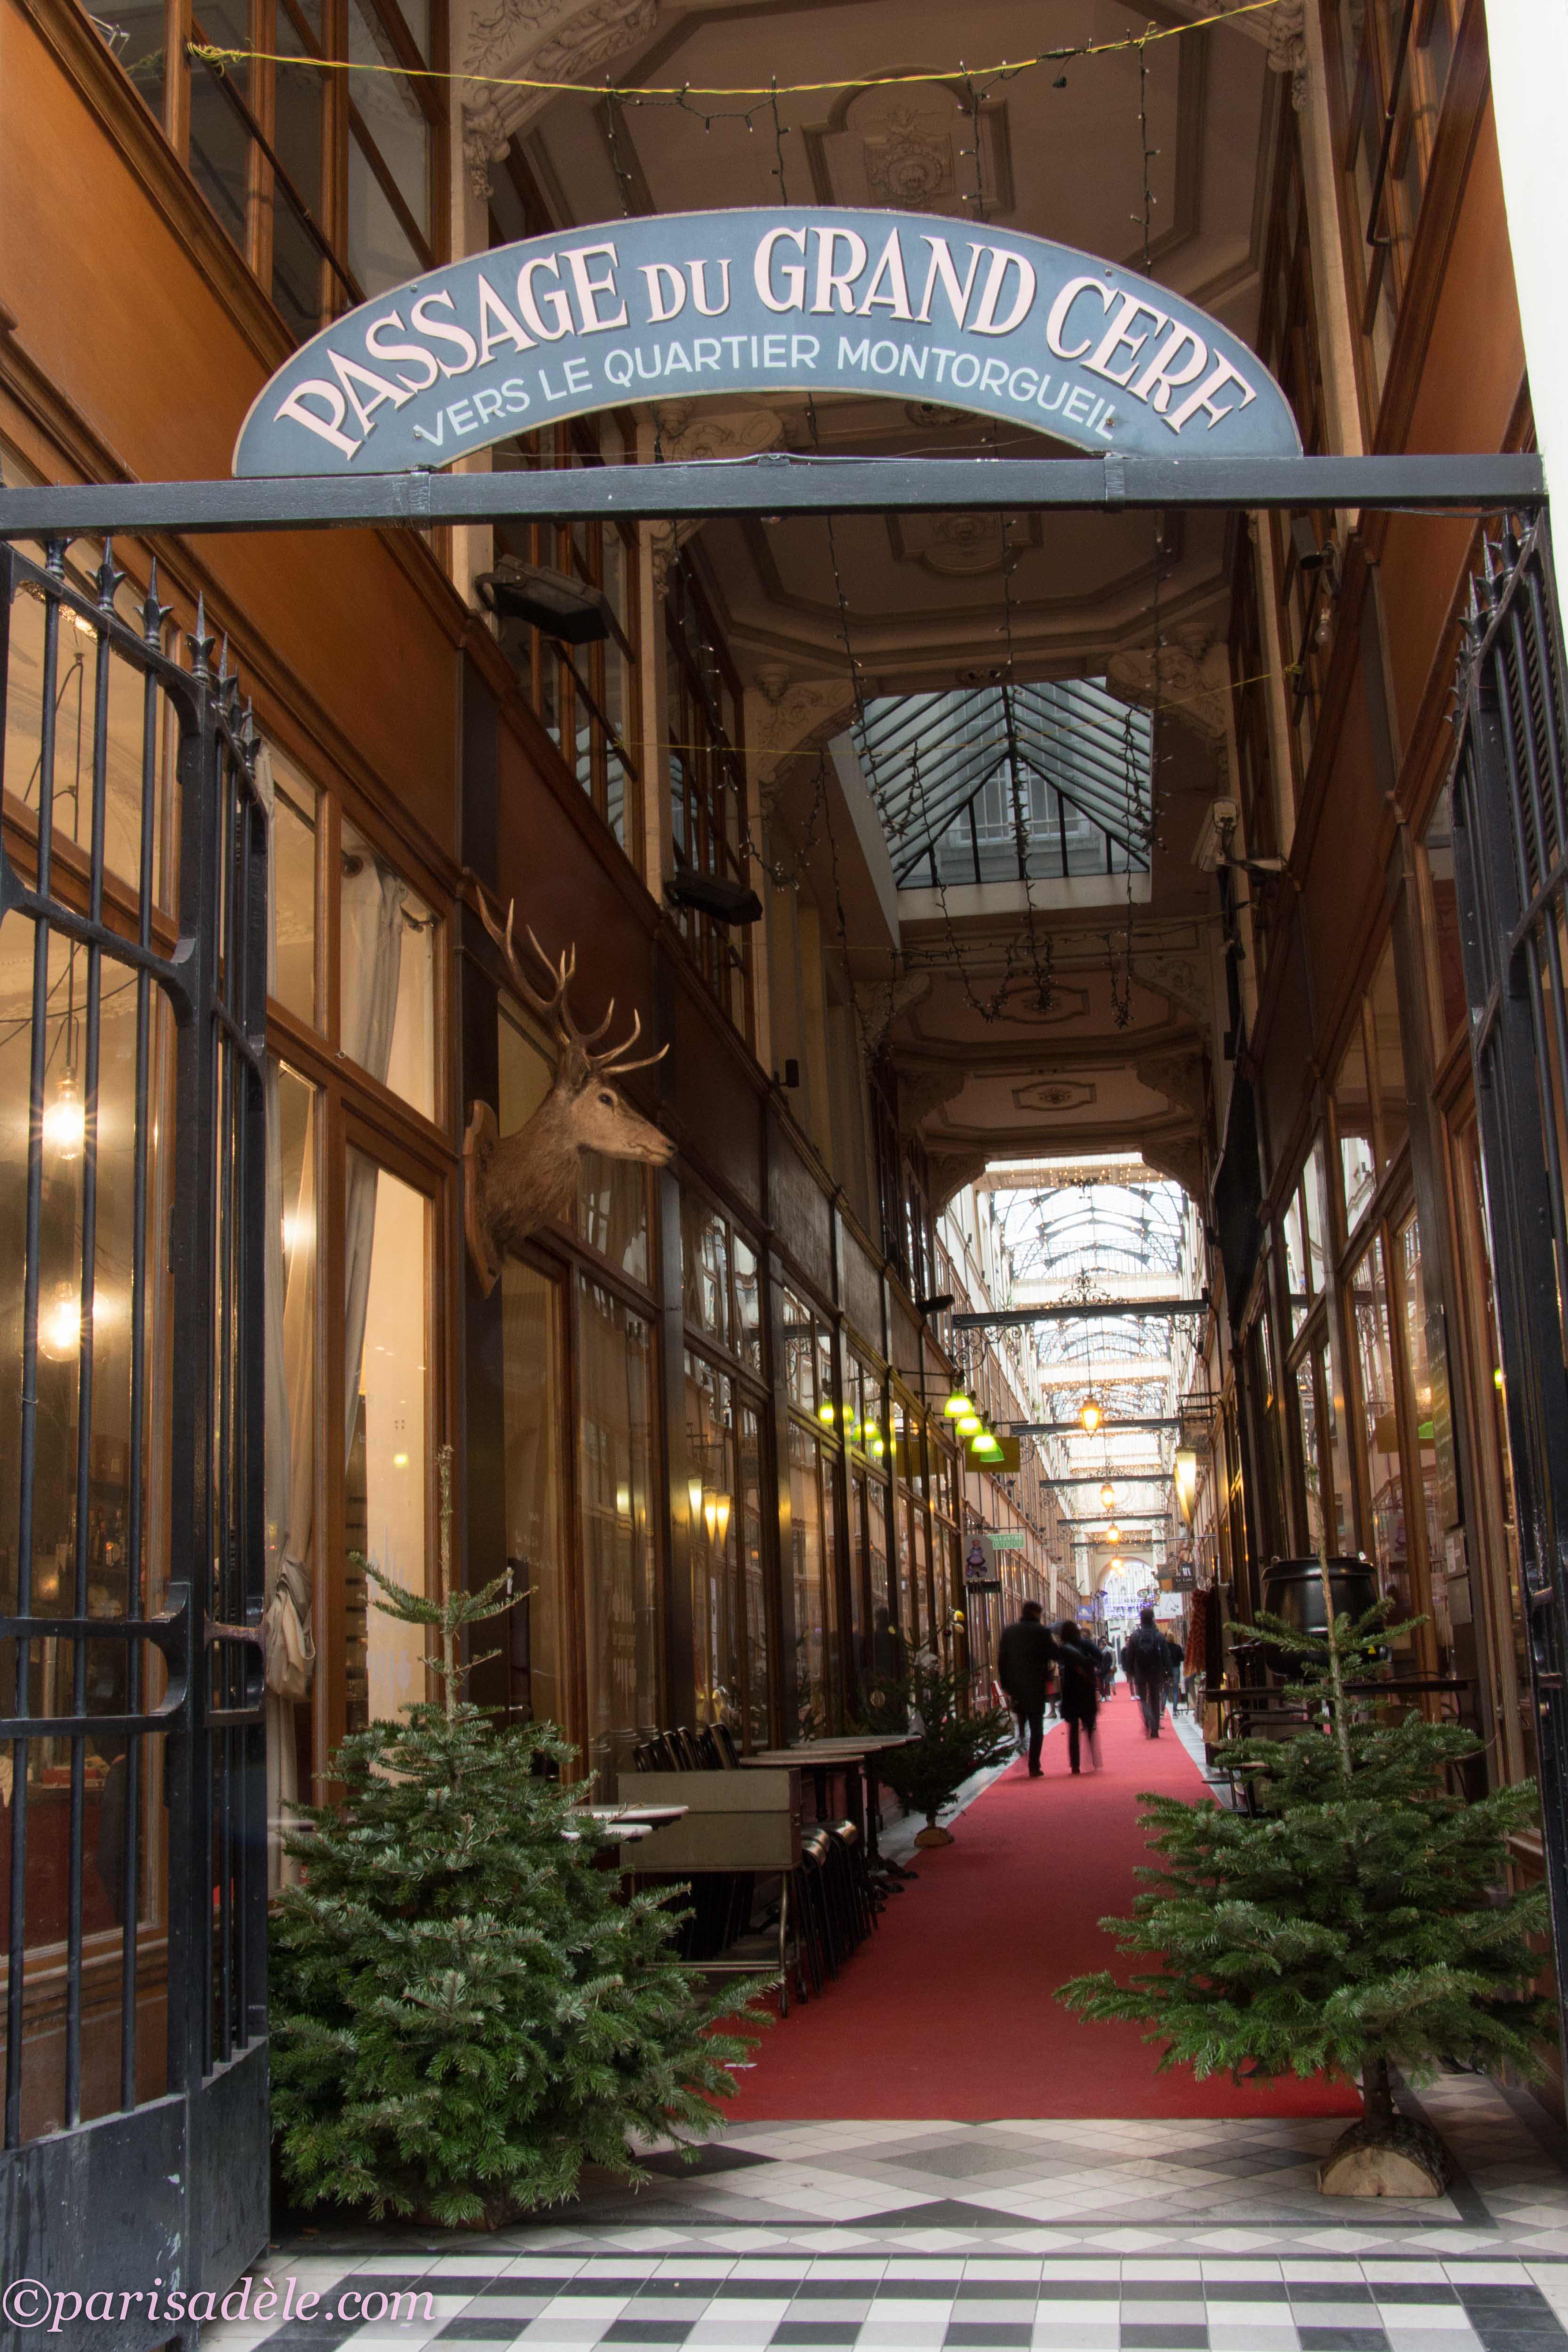 Passage du Grand Cerf | Paris Adèle3331 x 4996